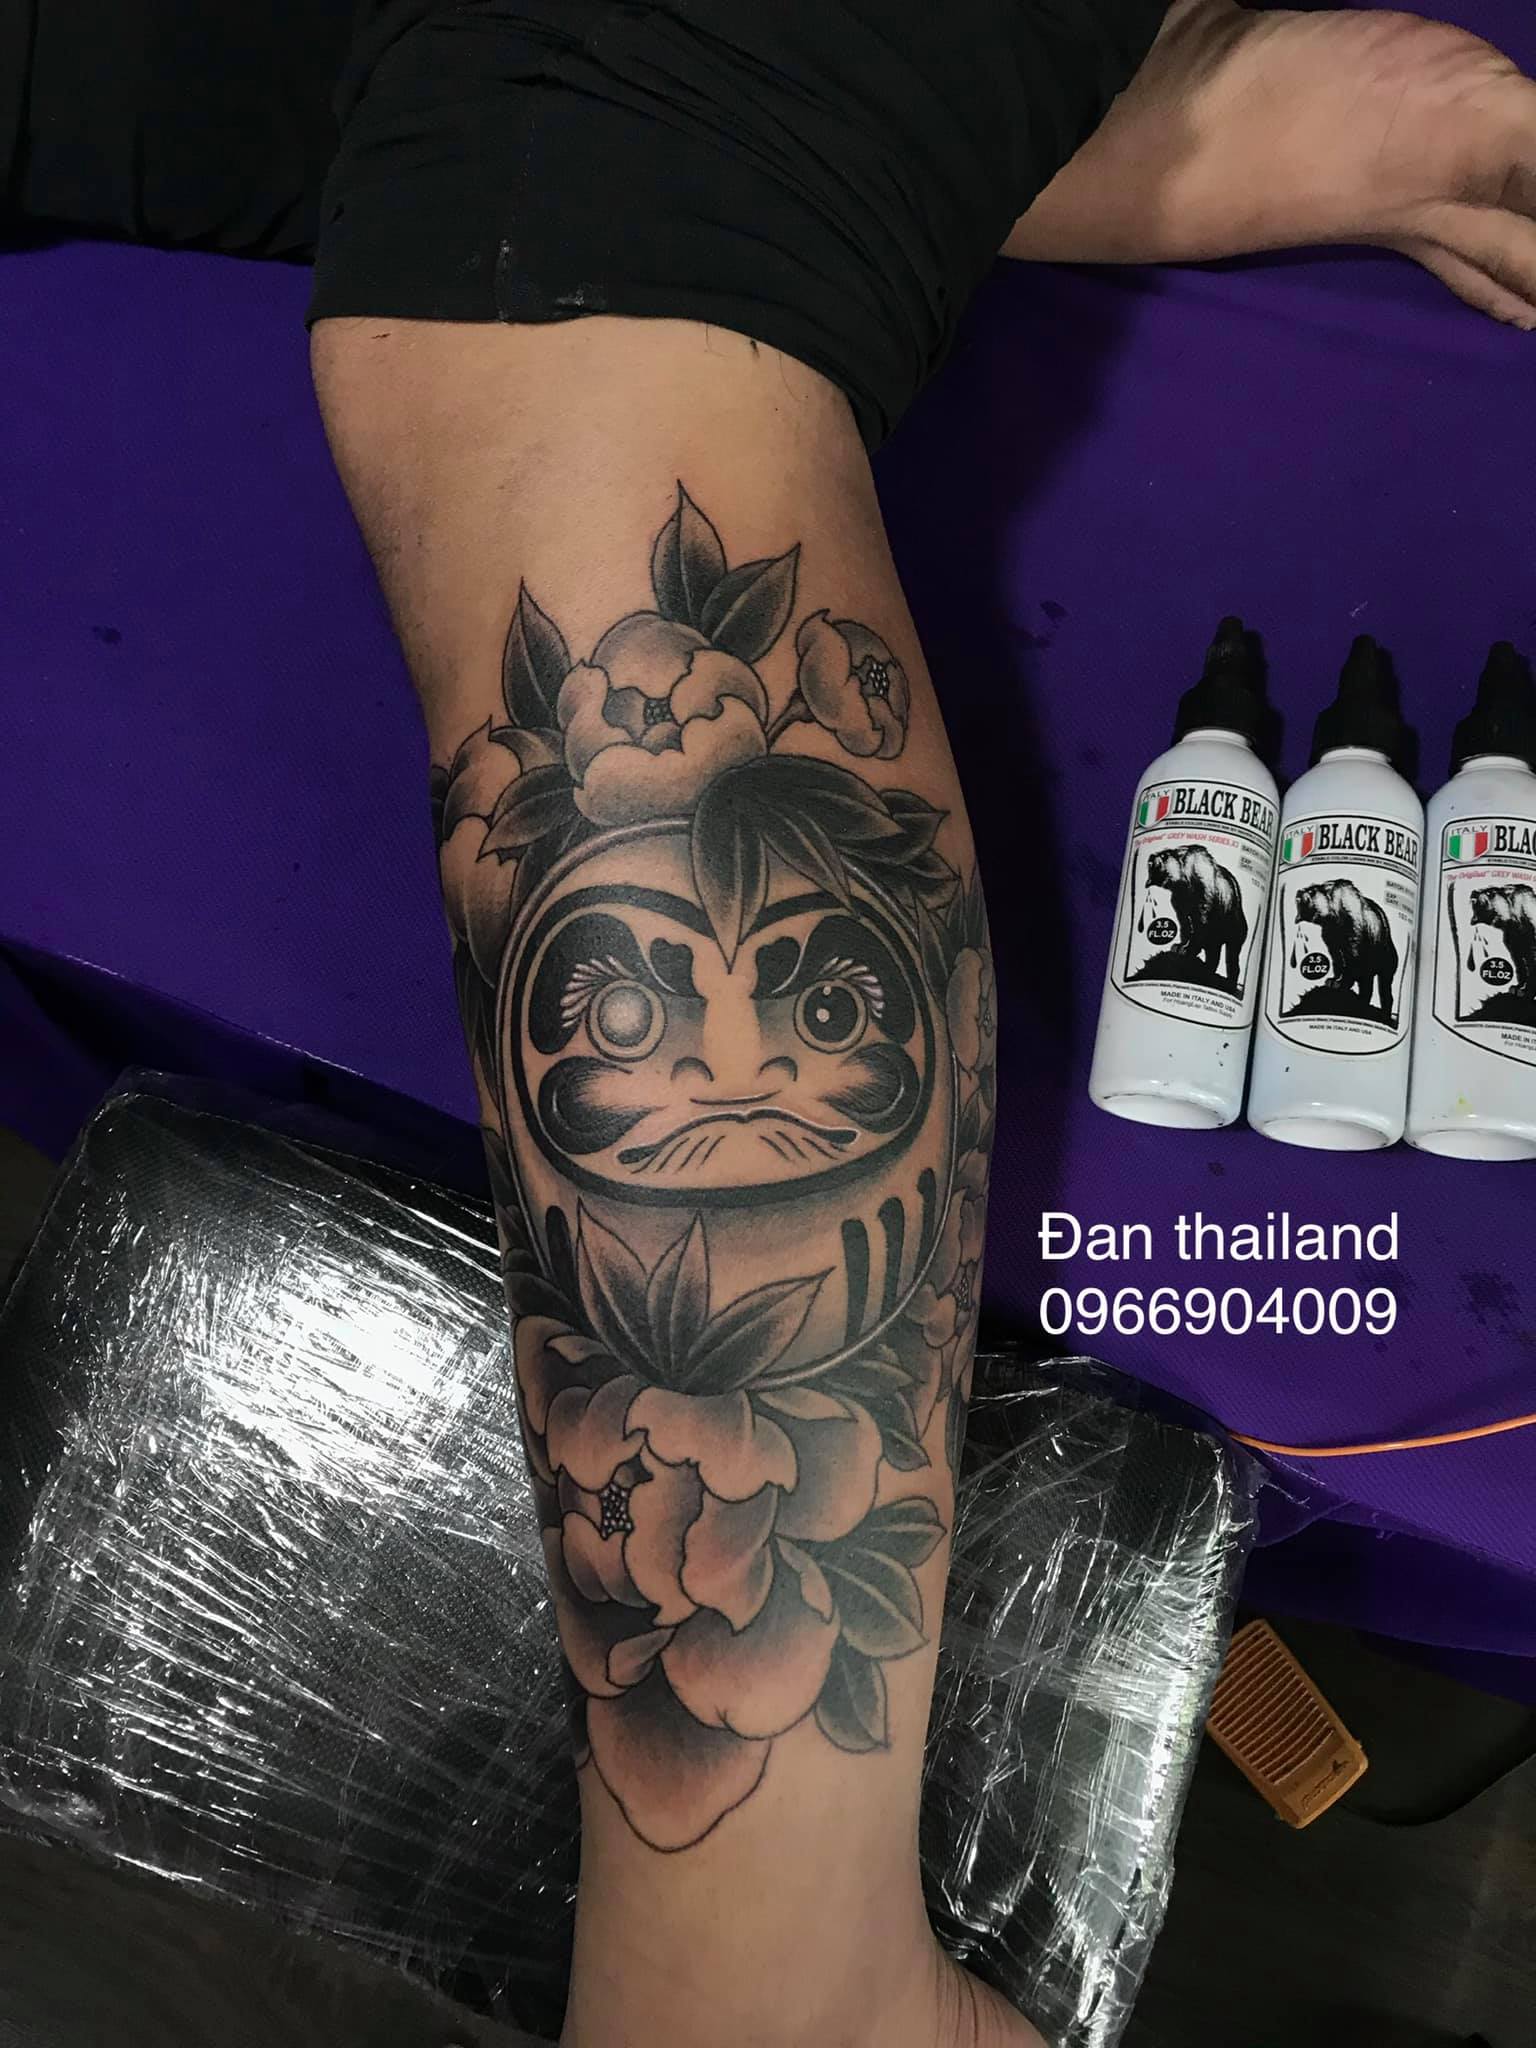 Đan Thailan Tattoo ảnh 2